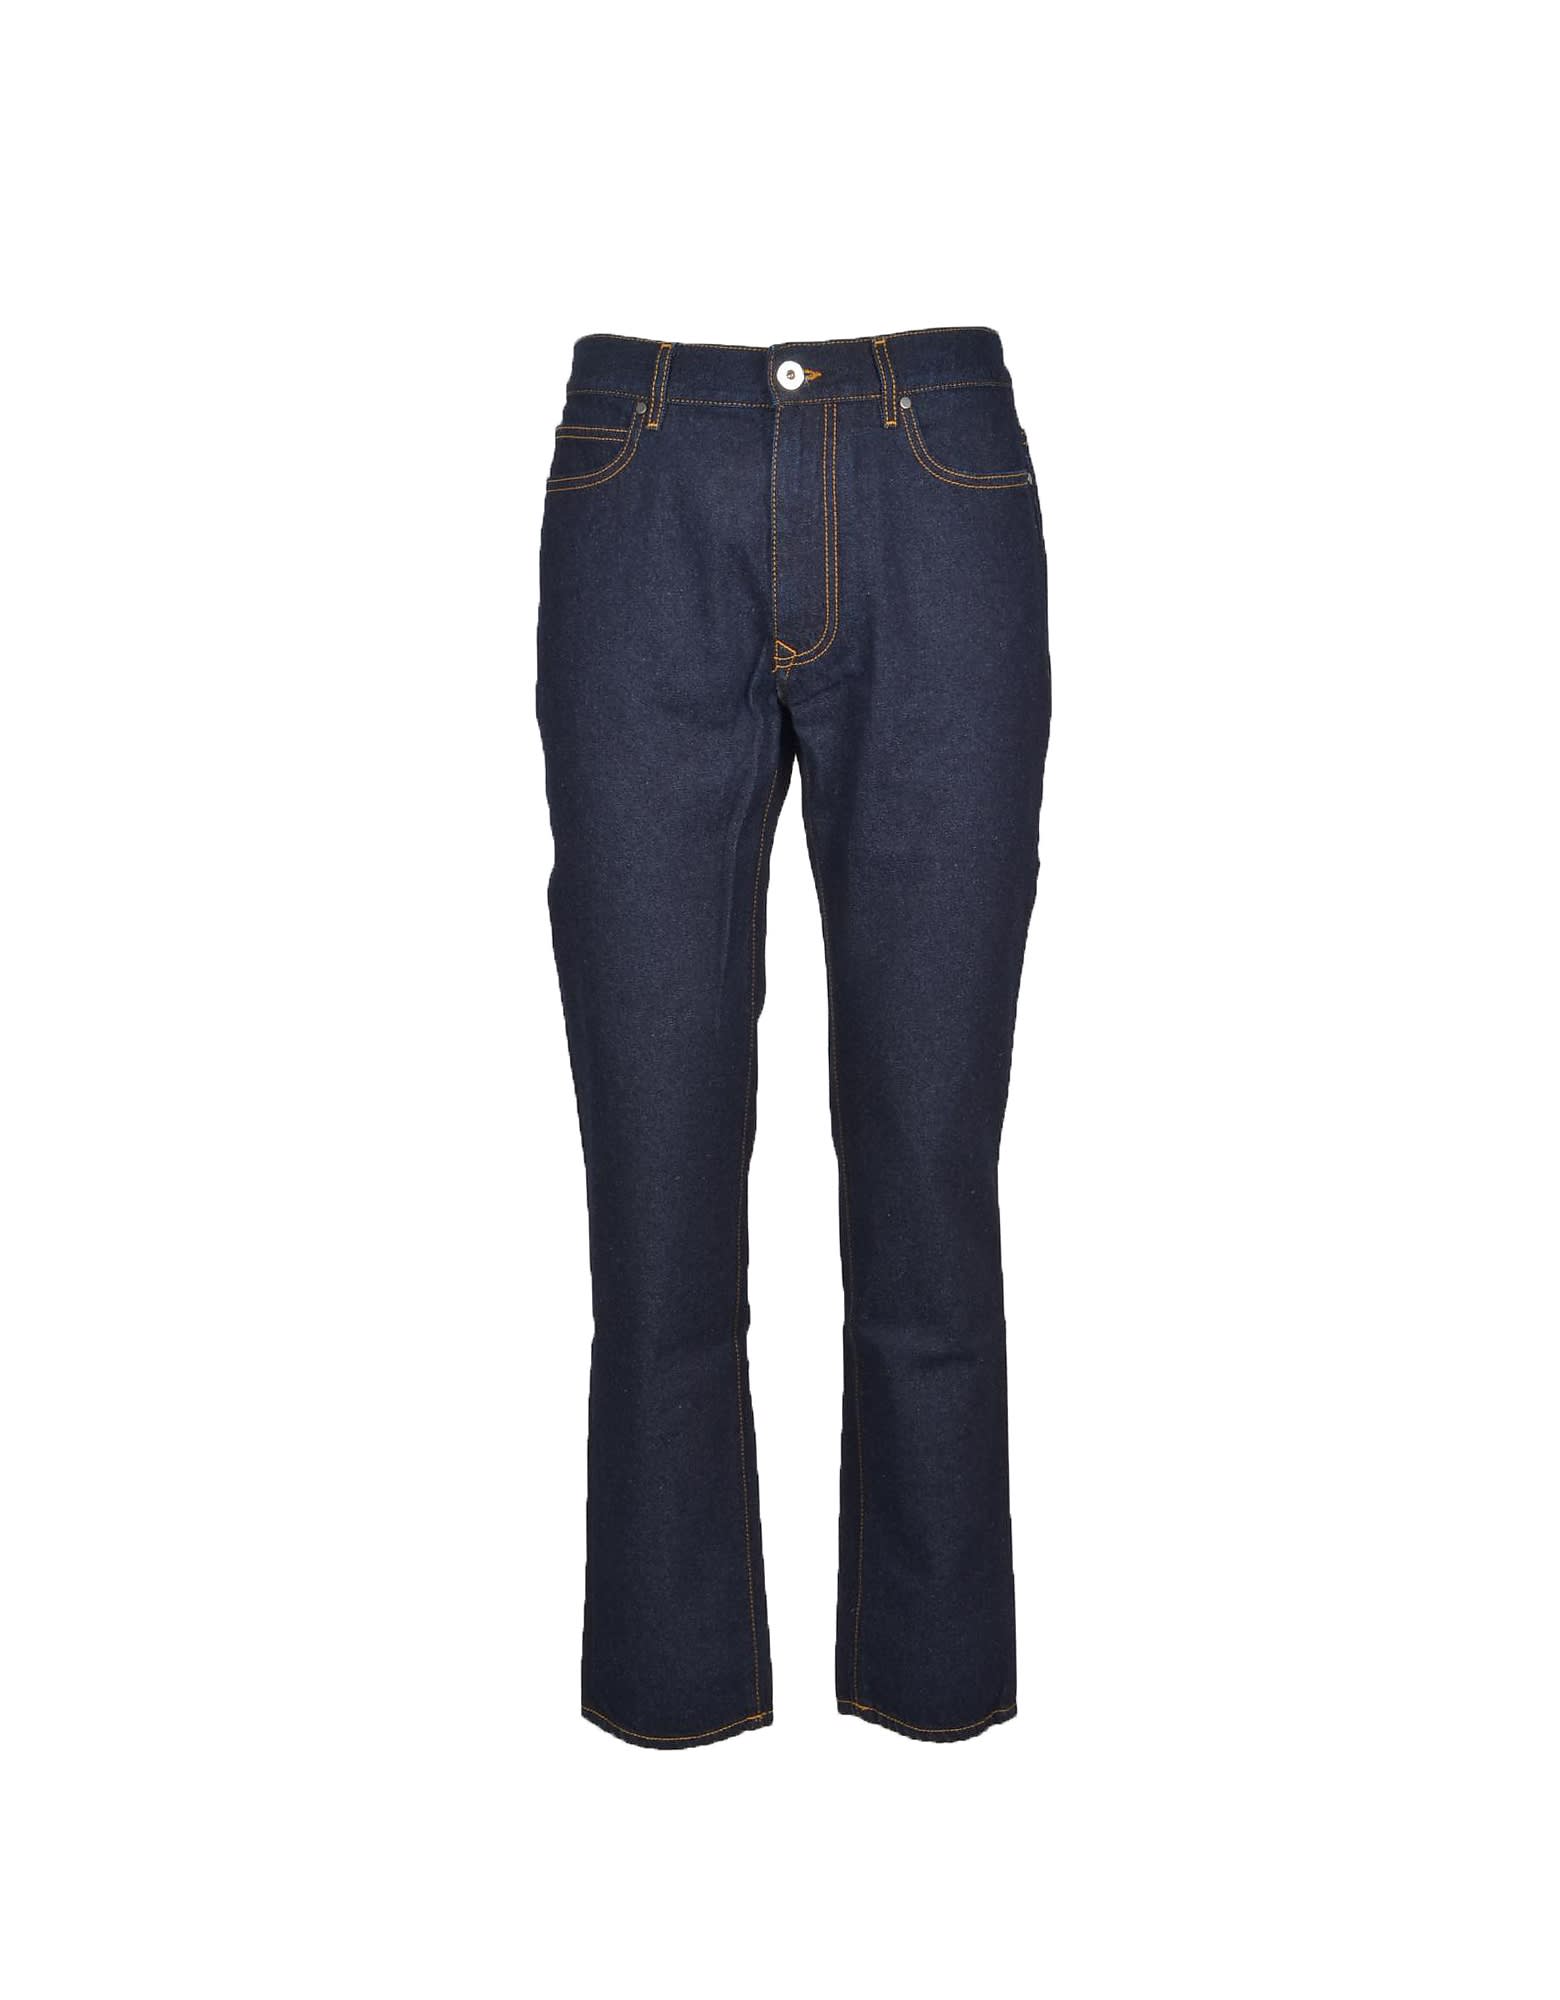 Vivienne Westwood Mens Blue Jeans